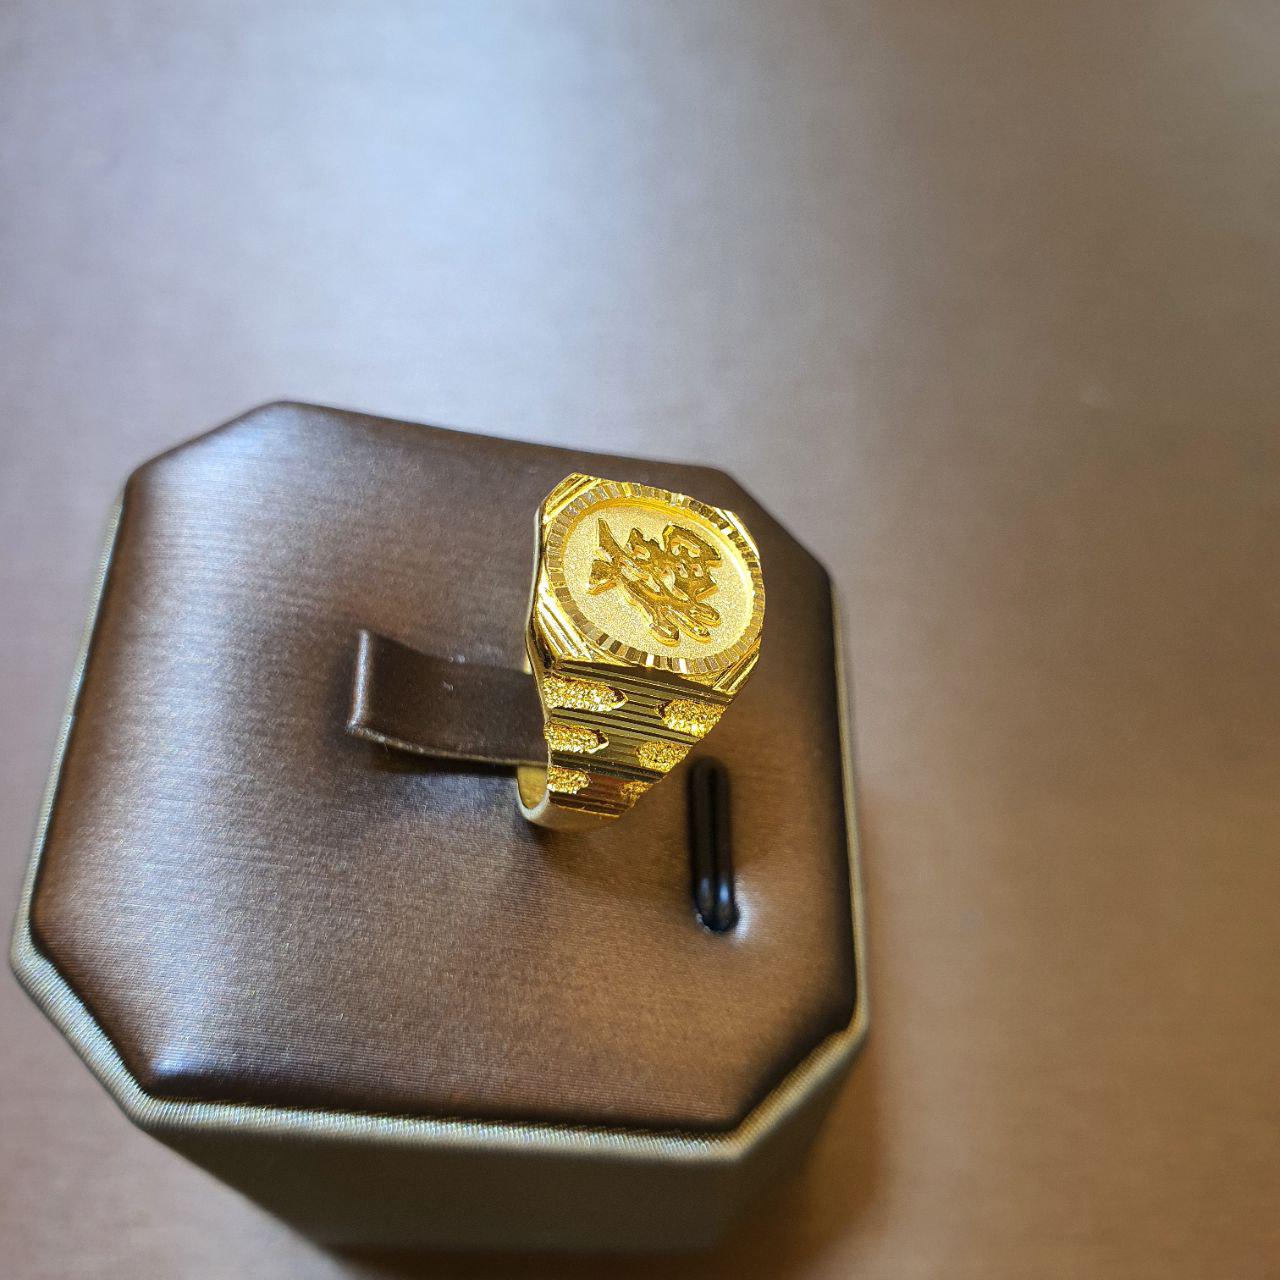 22k / 916 Gold Prosperity Ring V3-916 gold-Best Gold Shop